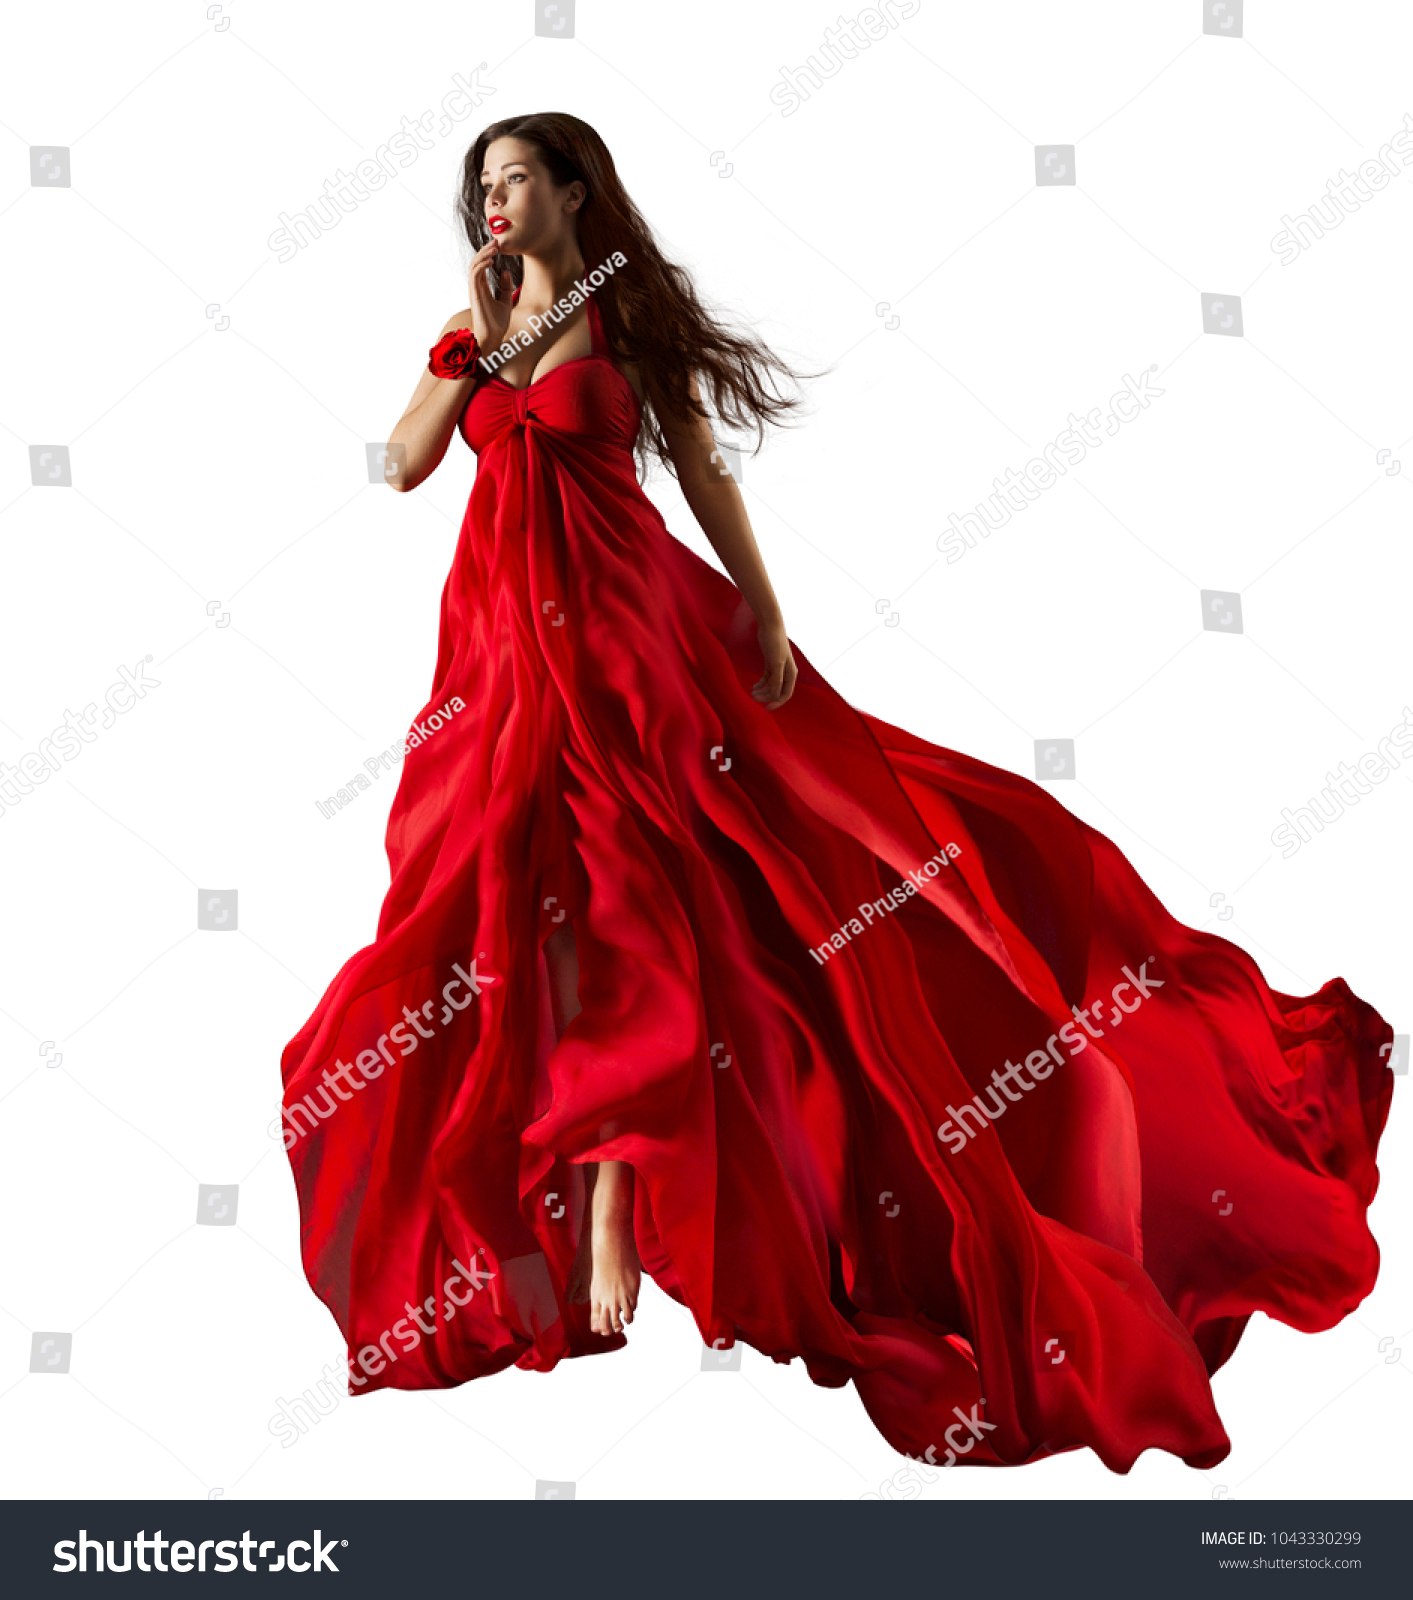 Fashion Model Red Dress Beautiful Woman Stock Photo 1043330299 ...